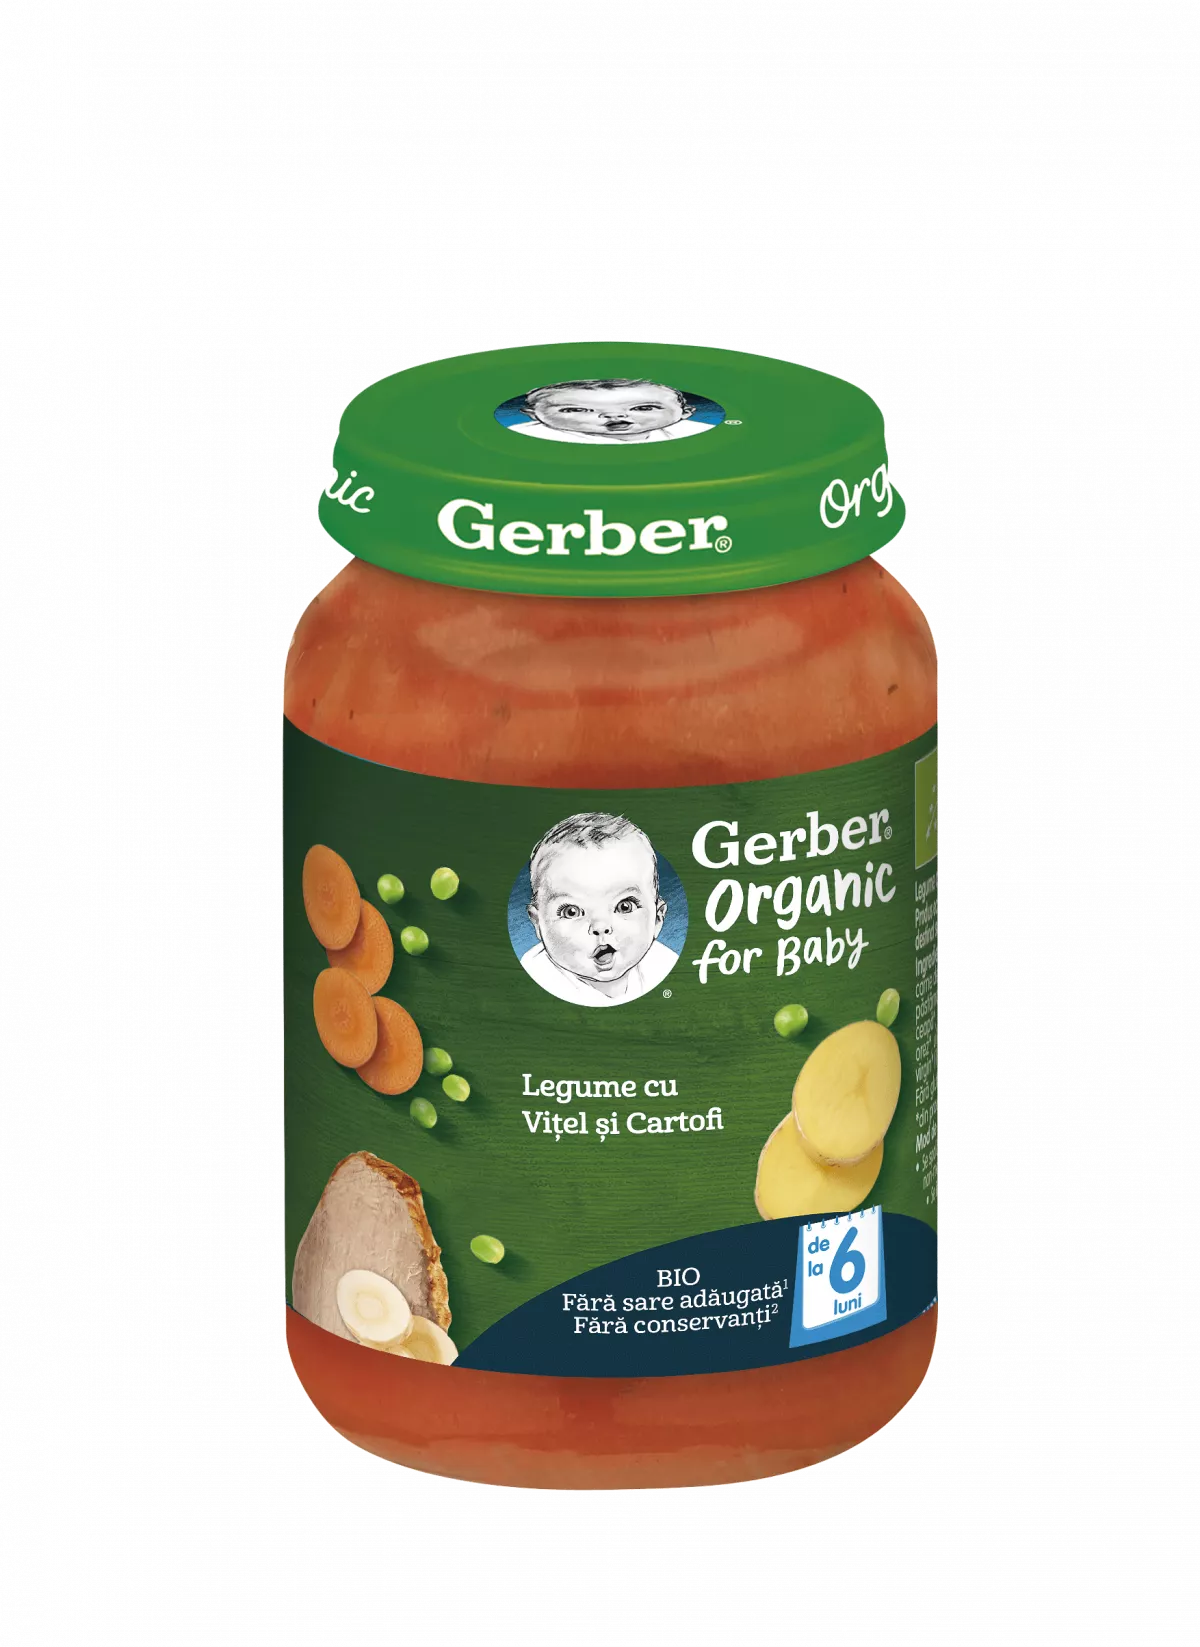 Nestle Gerber bio legume cu vitel si cartofi, 190g, de la 6 luni